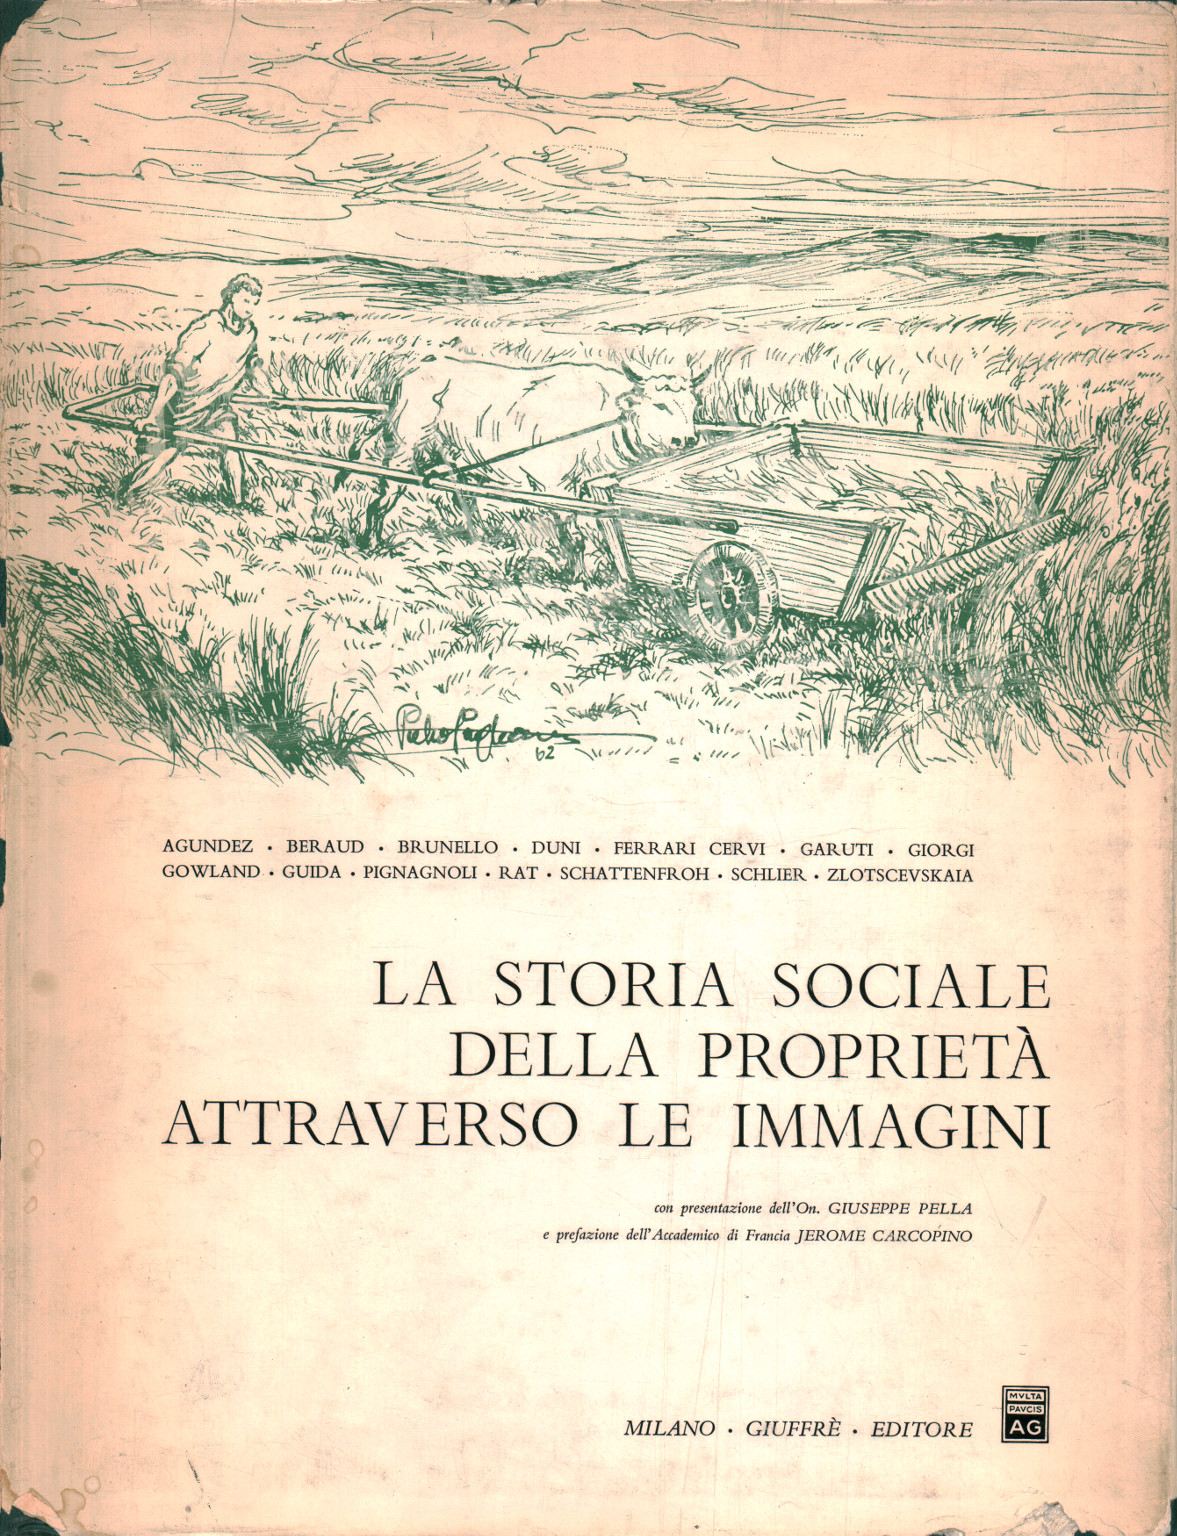 La storia sociale della proprietà attraverso le i, s.a.